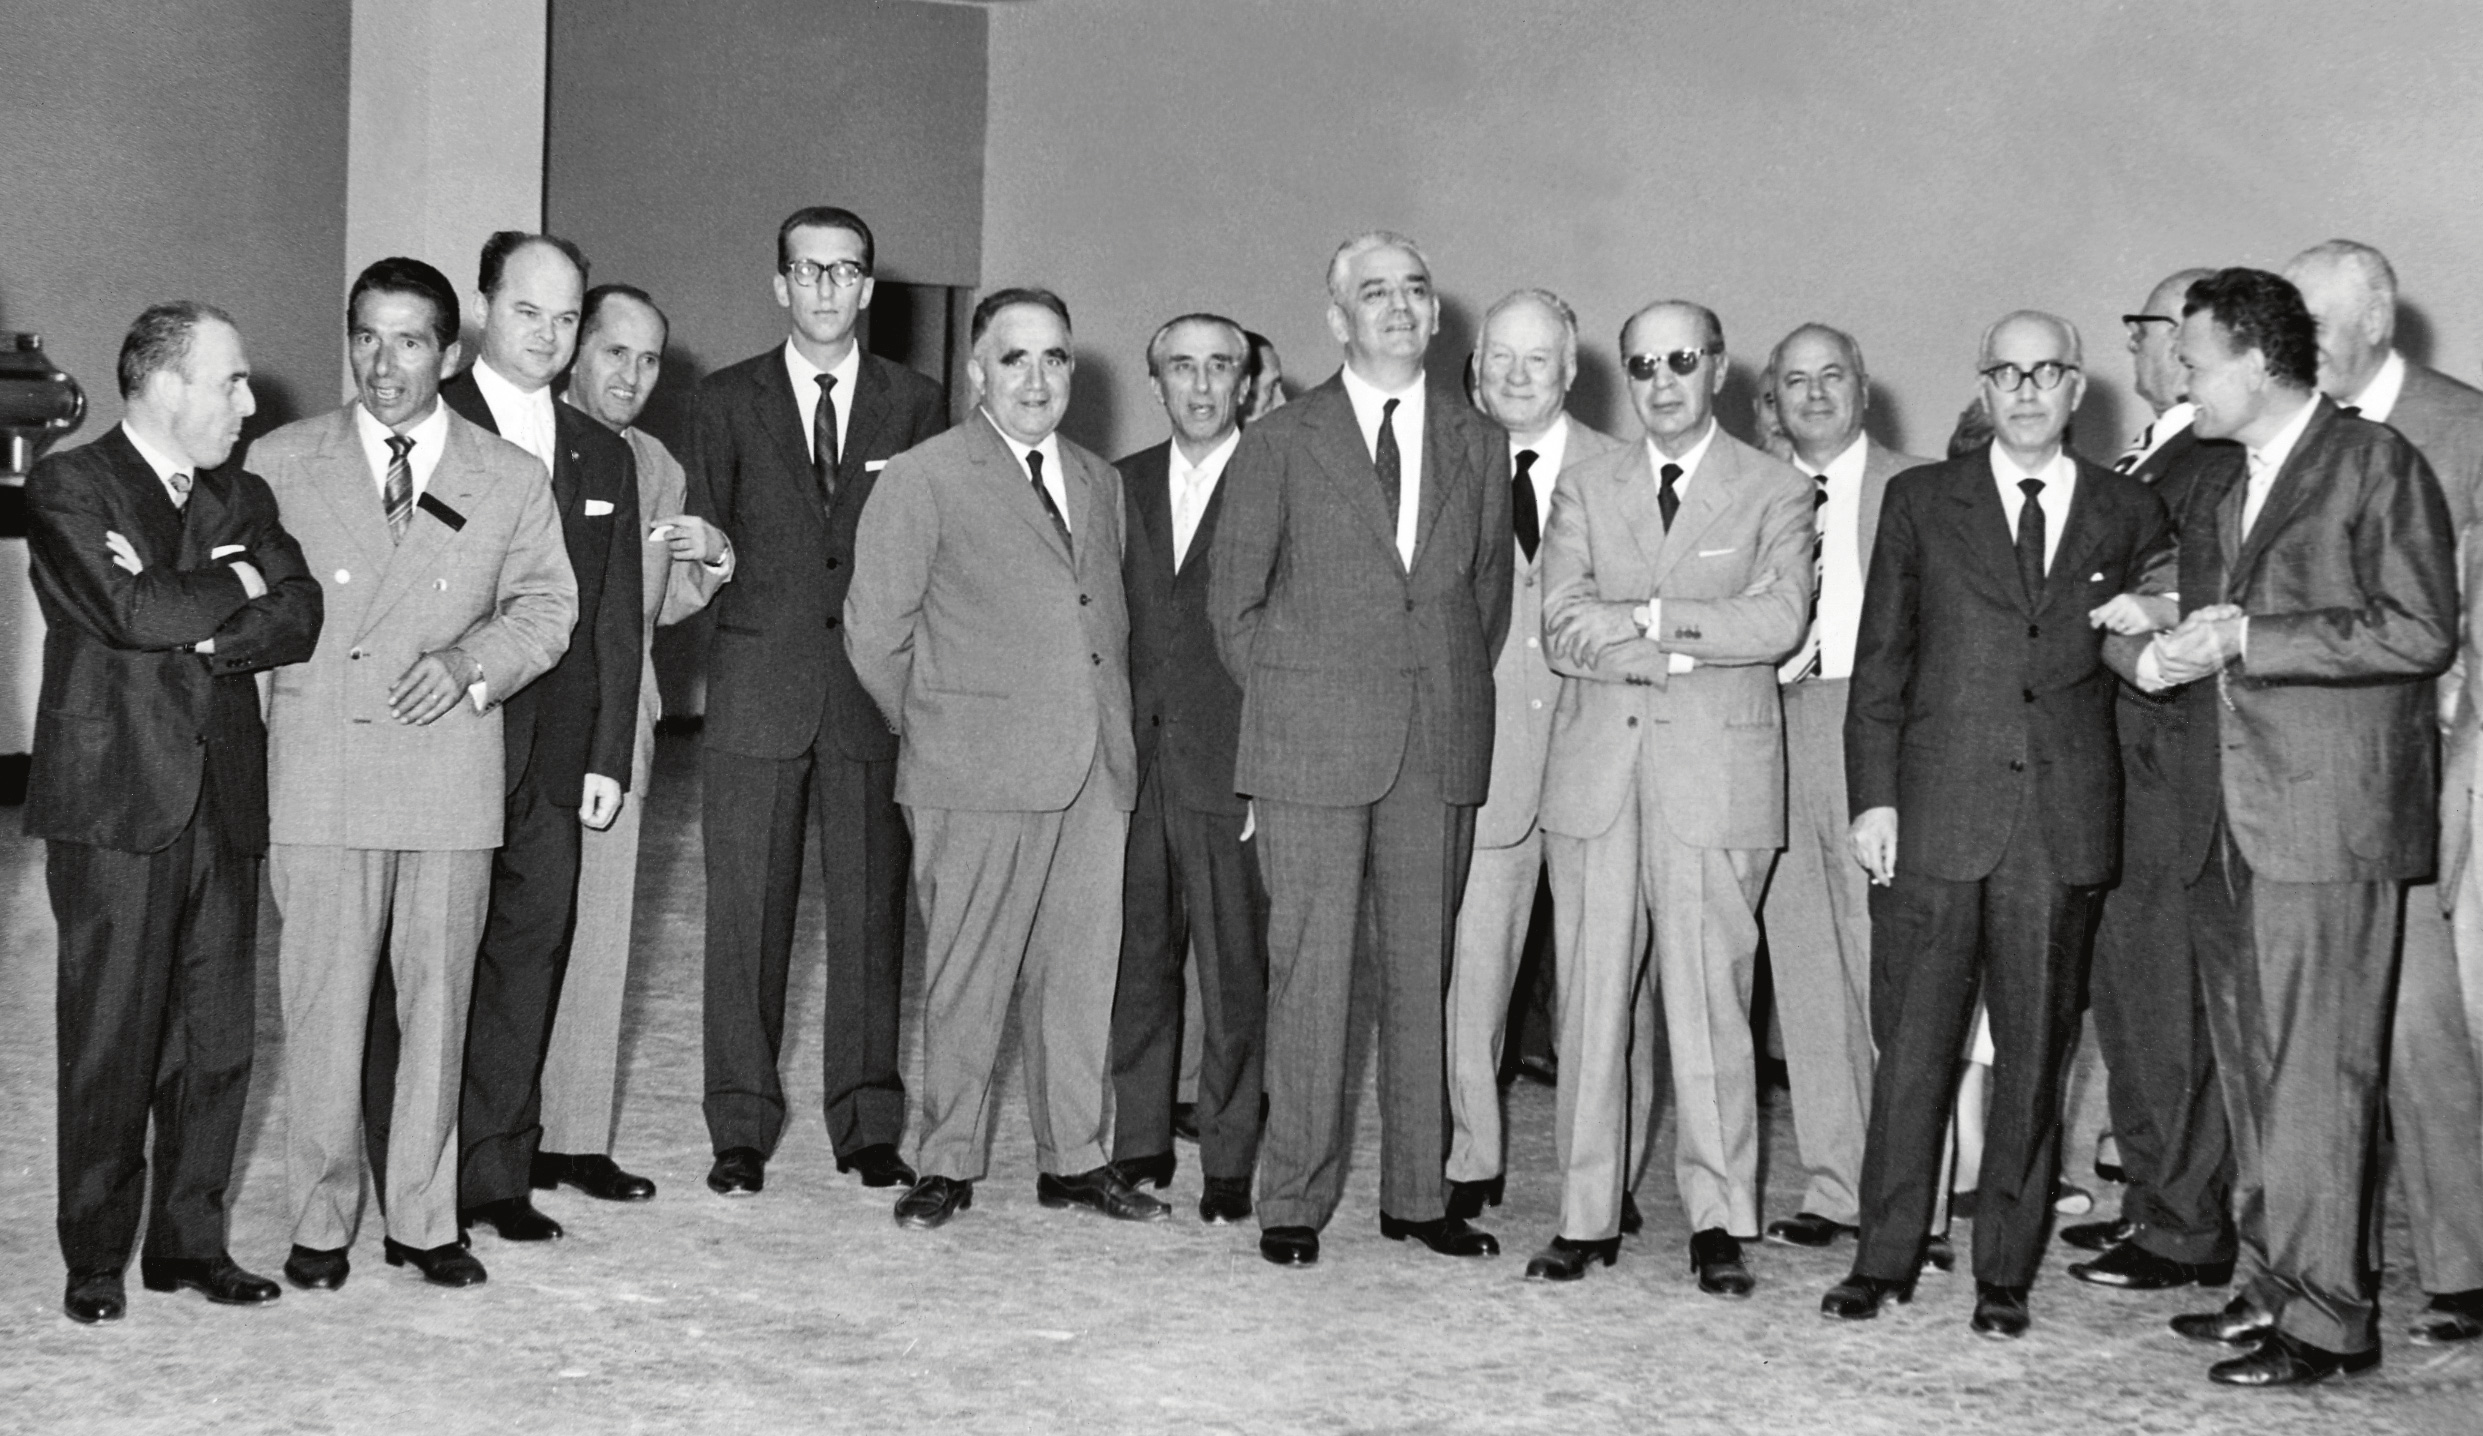 1961. Conferenza stampa del I Salone del Mobile di Milano. A destra, in primo piano, Angelo Molteni